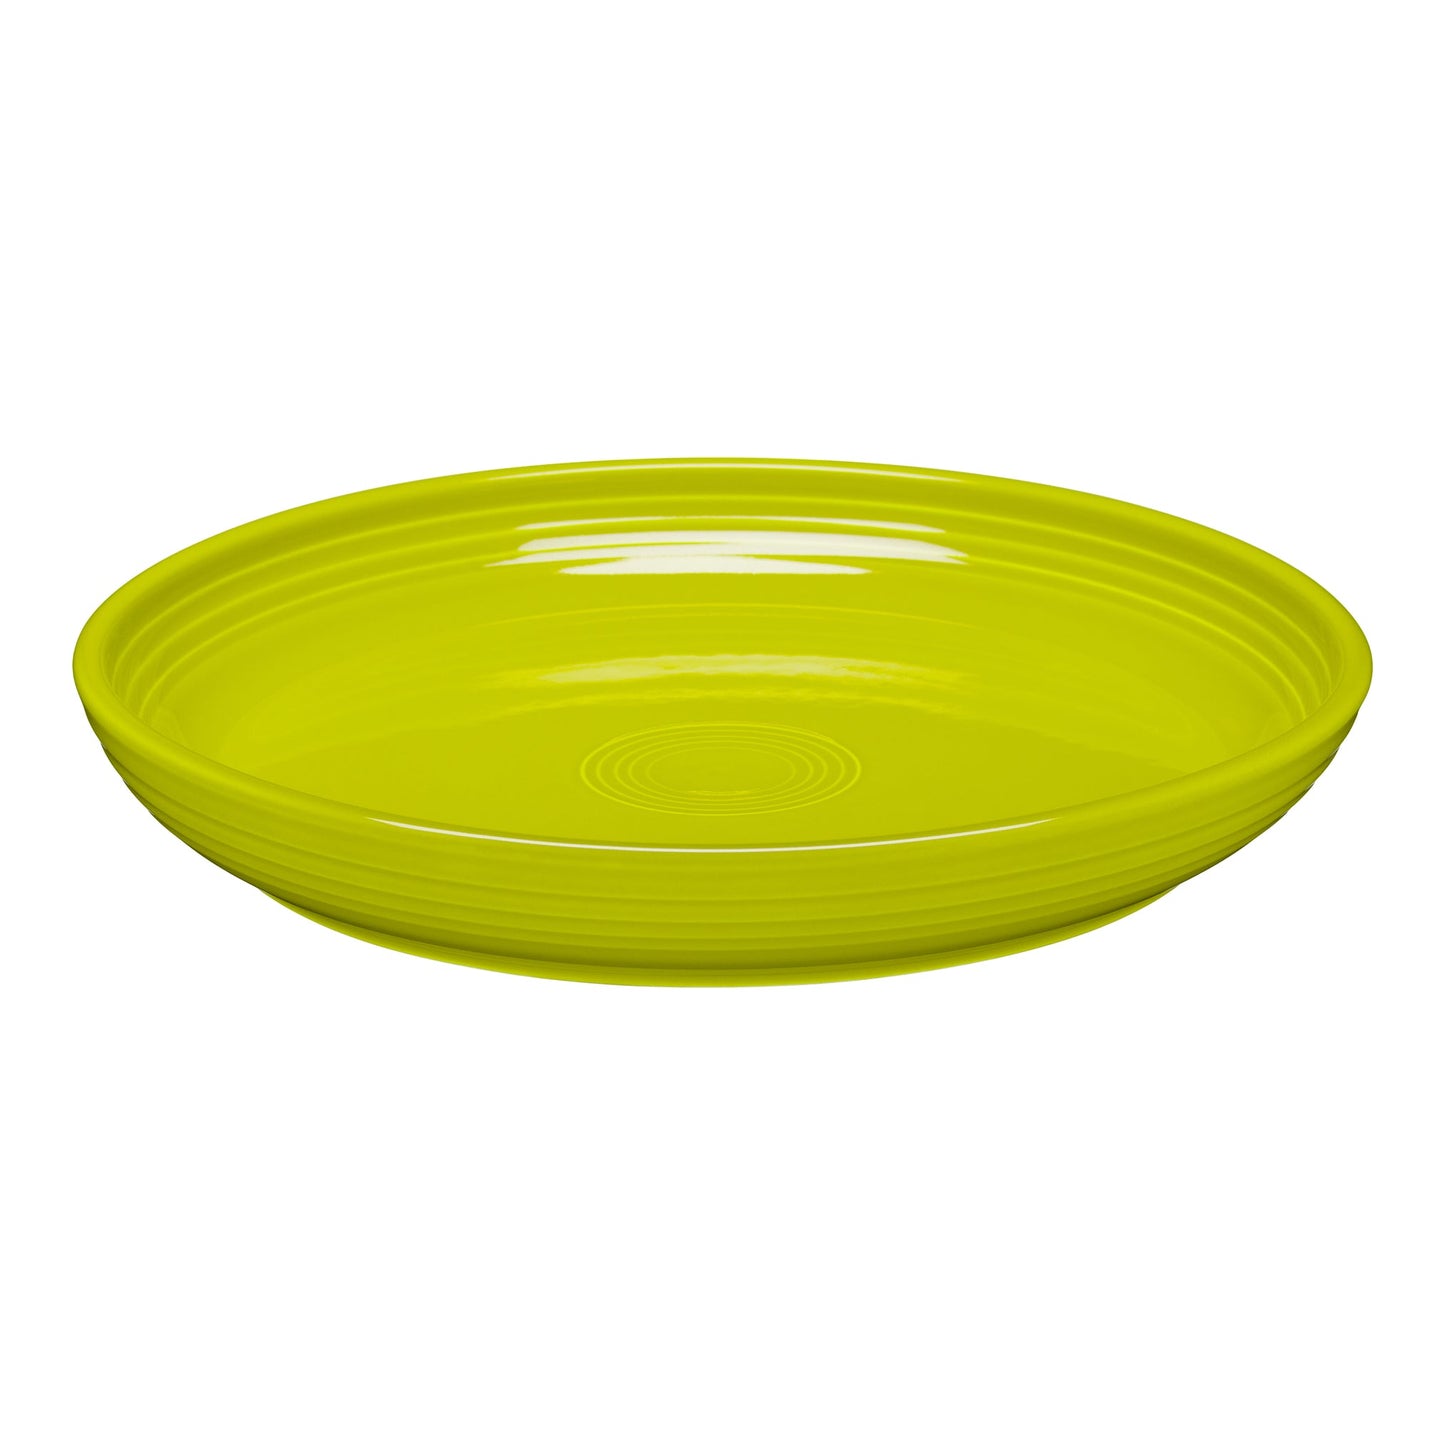 10 3/8" Dinner Bowl Plate